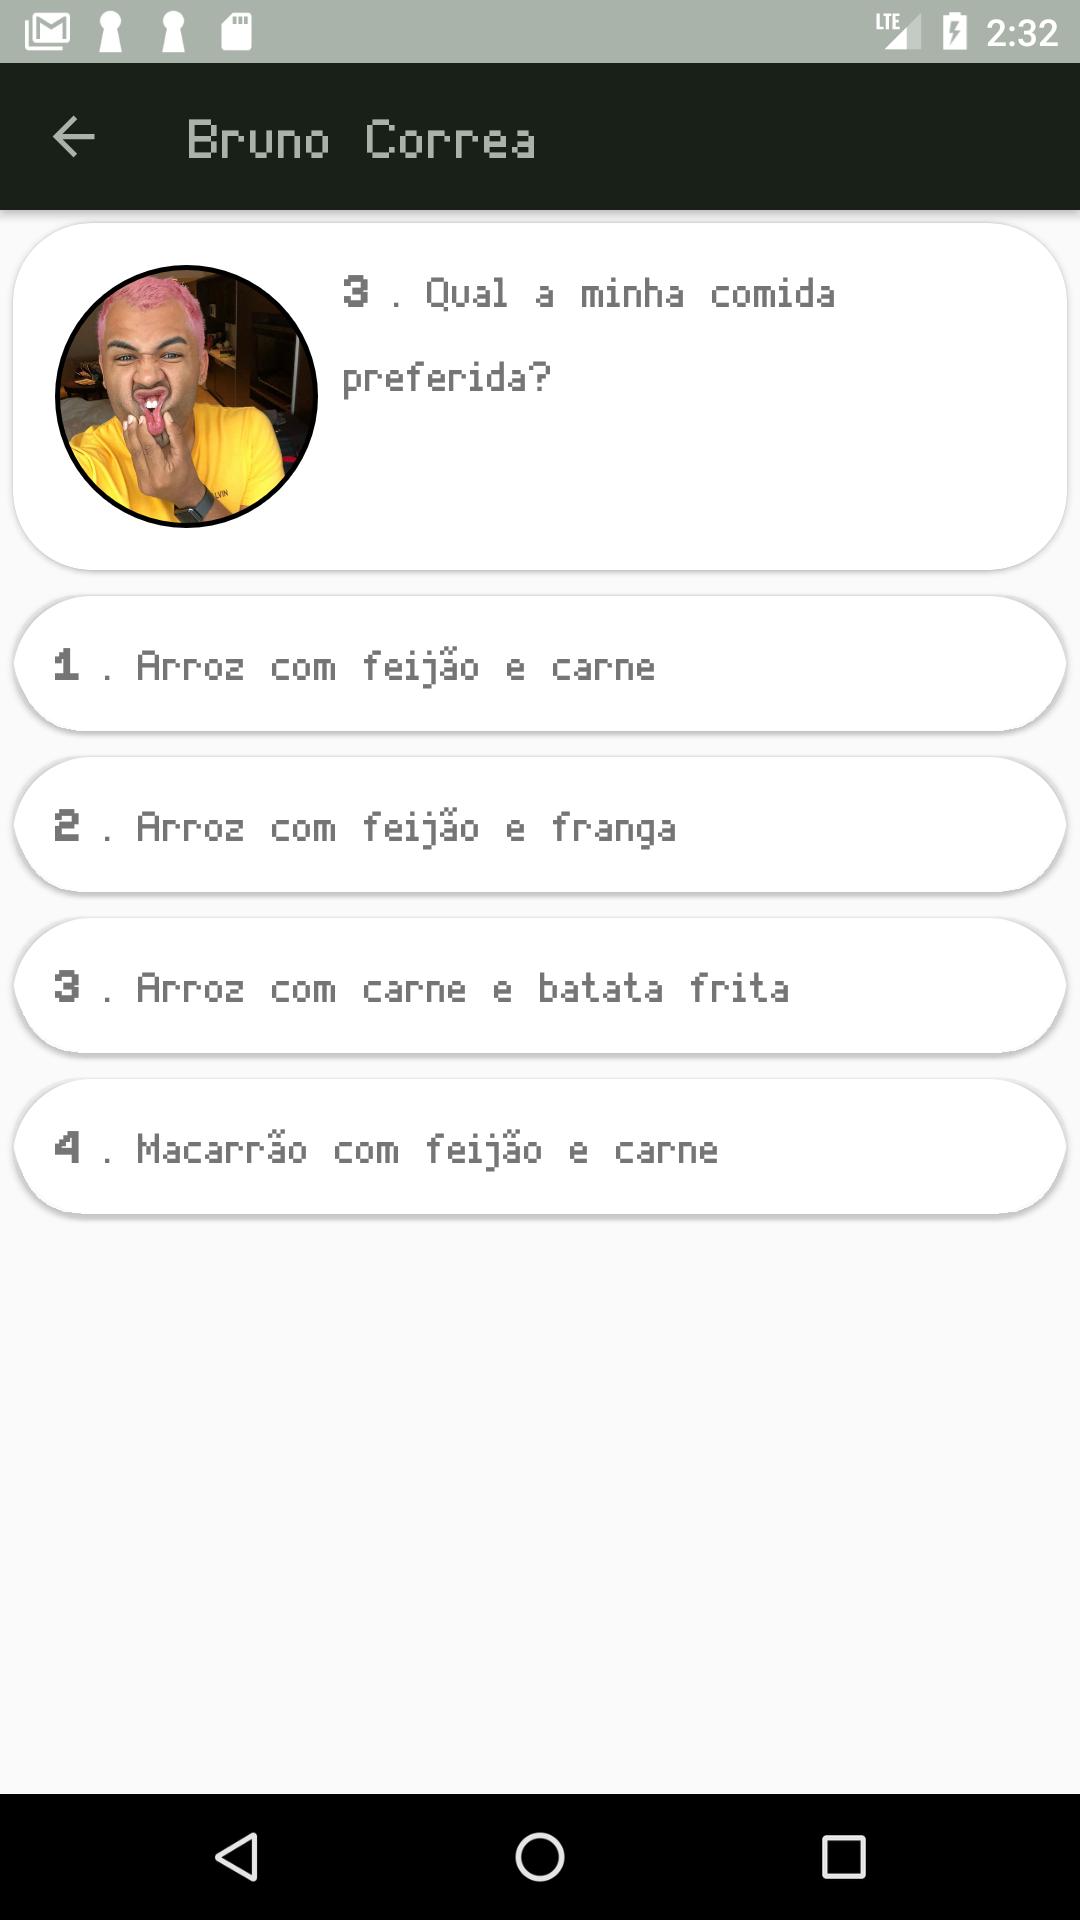 Bruno Correa - 50 Fatos 1.3.2 Screenshot 2